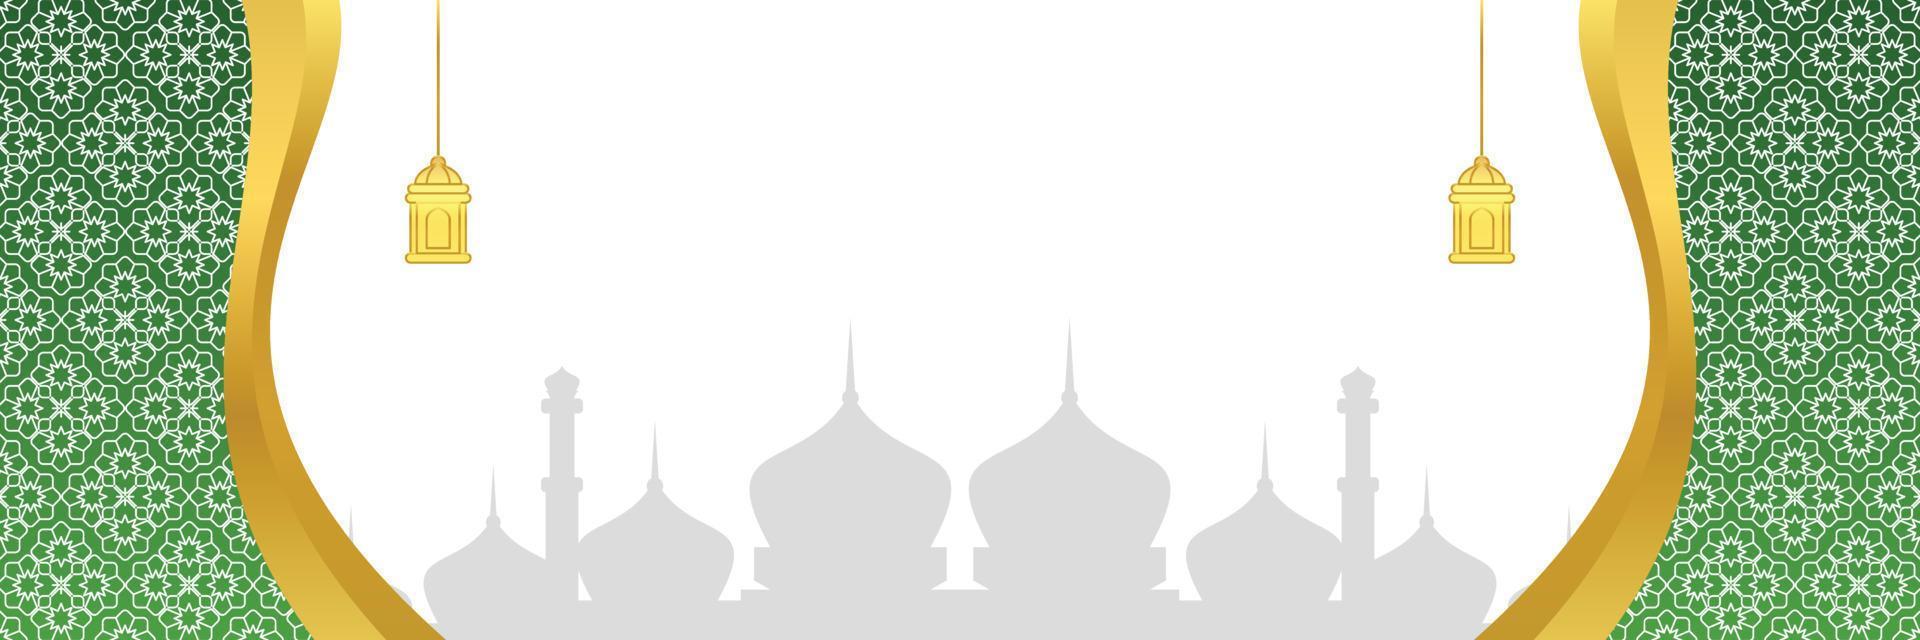 islâmico fundo, com mandala ornamento, lanterna e mesquita silhueta. vetor modelo para bandeiras, cumprimento cartões para islâmico feriados, eid al fitr, ramadã, eid al adha